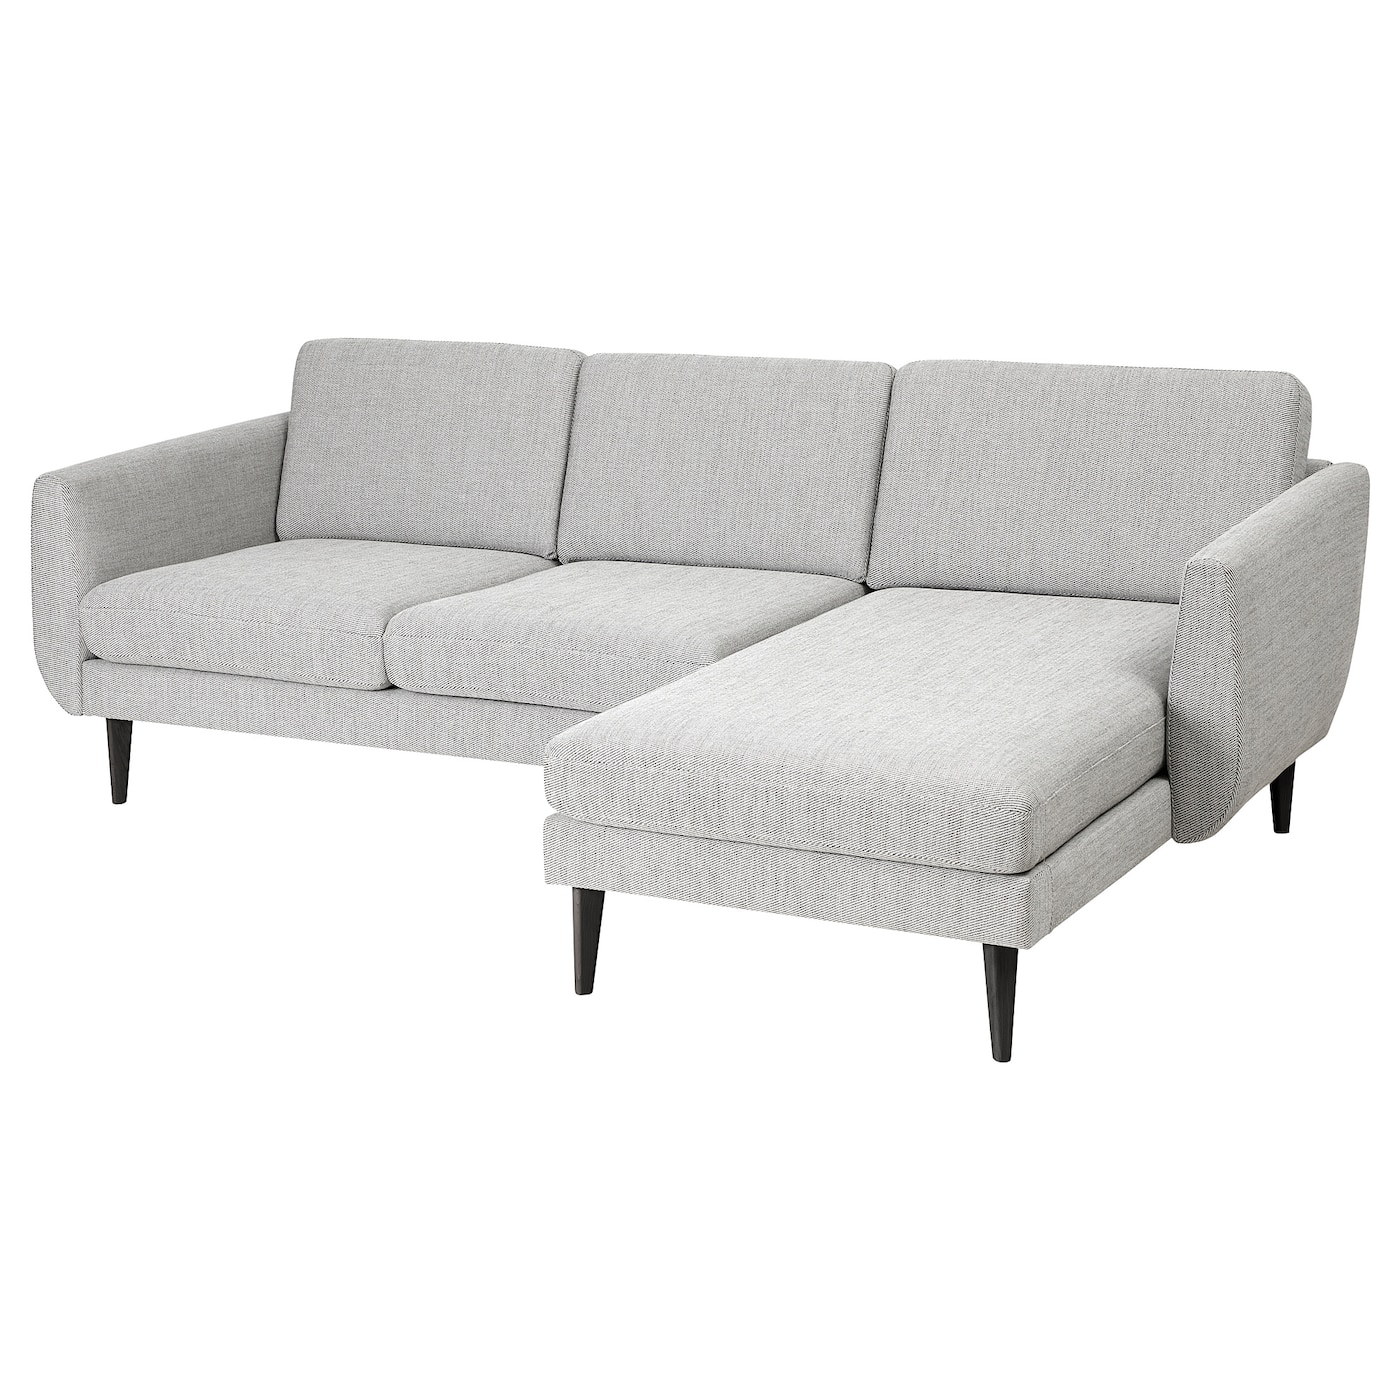 СМЕДСТОРП 3-местный диван + диван, Виарп бежевый/коричневый/черный SMEDSTORP IKEA